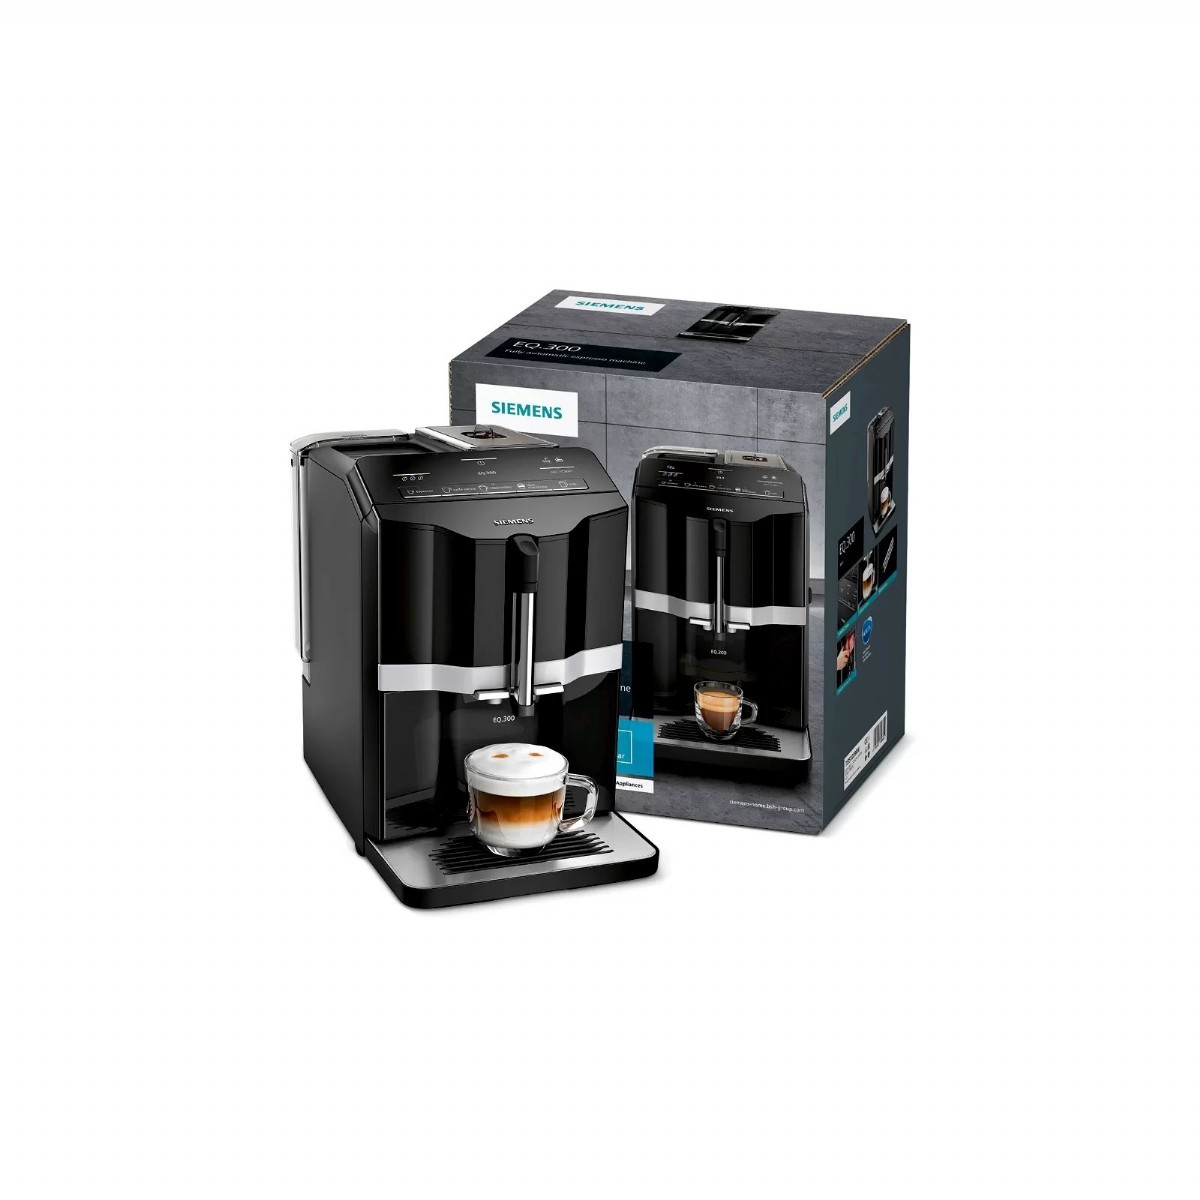 Espresso & Cappuccino Makinesi | Siemens EQ300 TI351209RW Otomatik Kahve ve Espresso Makinesi | TI351209RW | TI351209RW, Siemens TI351209RW, ti351209rw, tı353209rw, Siemens EQ300 TI351209RW Otomatik Kahve ve Espresso Makinesi, siemens eq300, siemens eq3, siemens siyah kahve makinesi | 